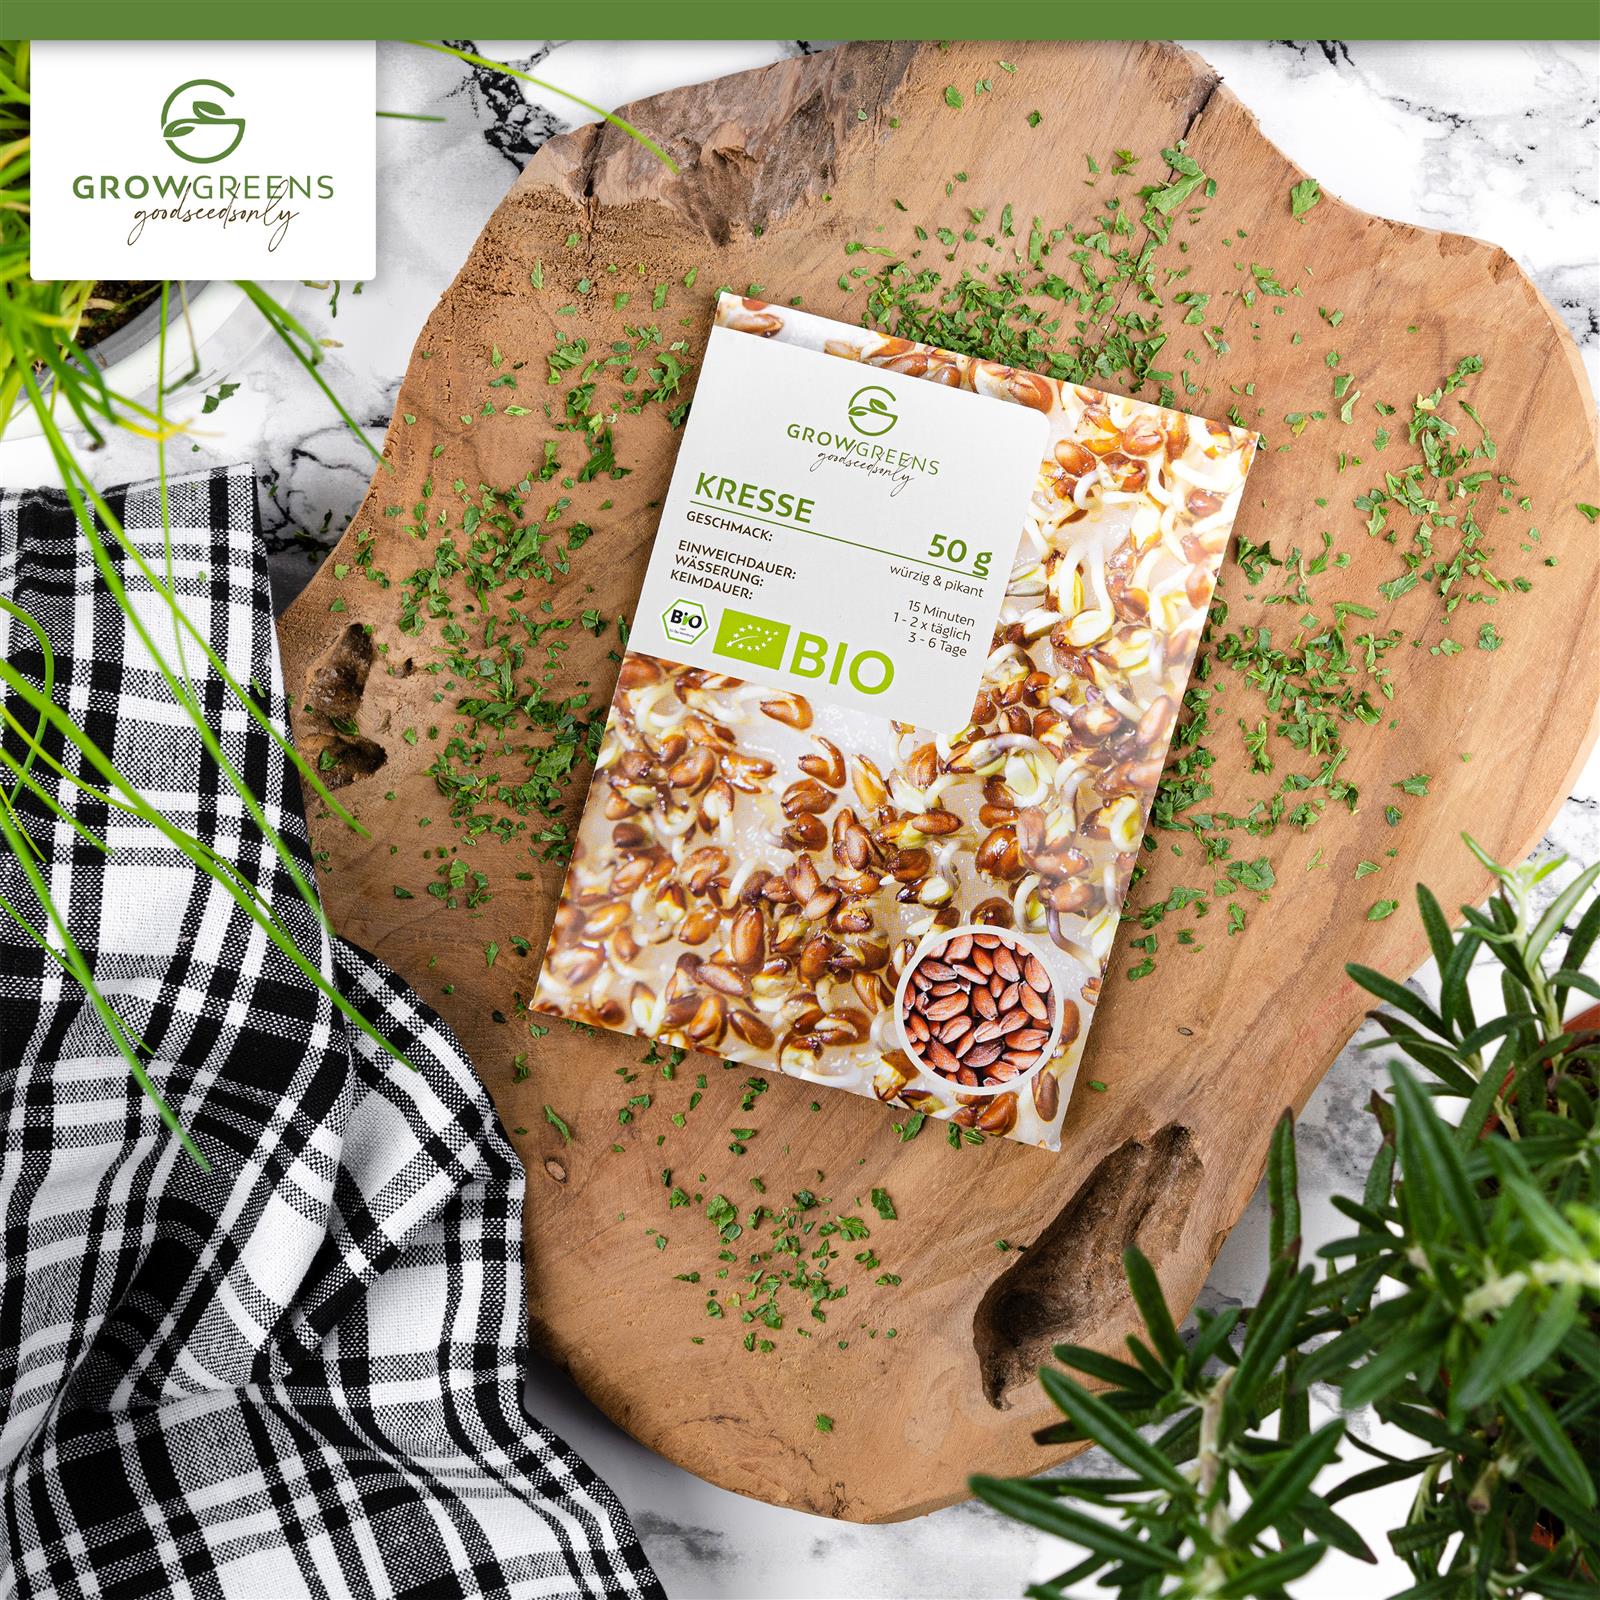 BIO Kresse Sprossen Samen (50g) - Microgreens Saatgut ideal für die Anzucht von knackigen Keimsprossen